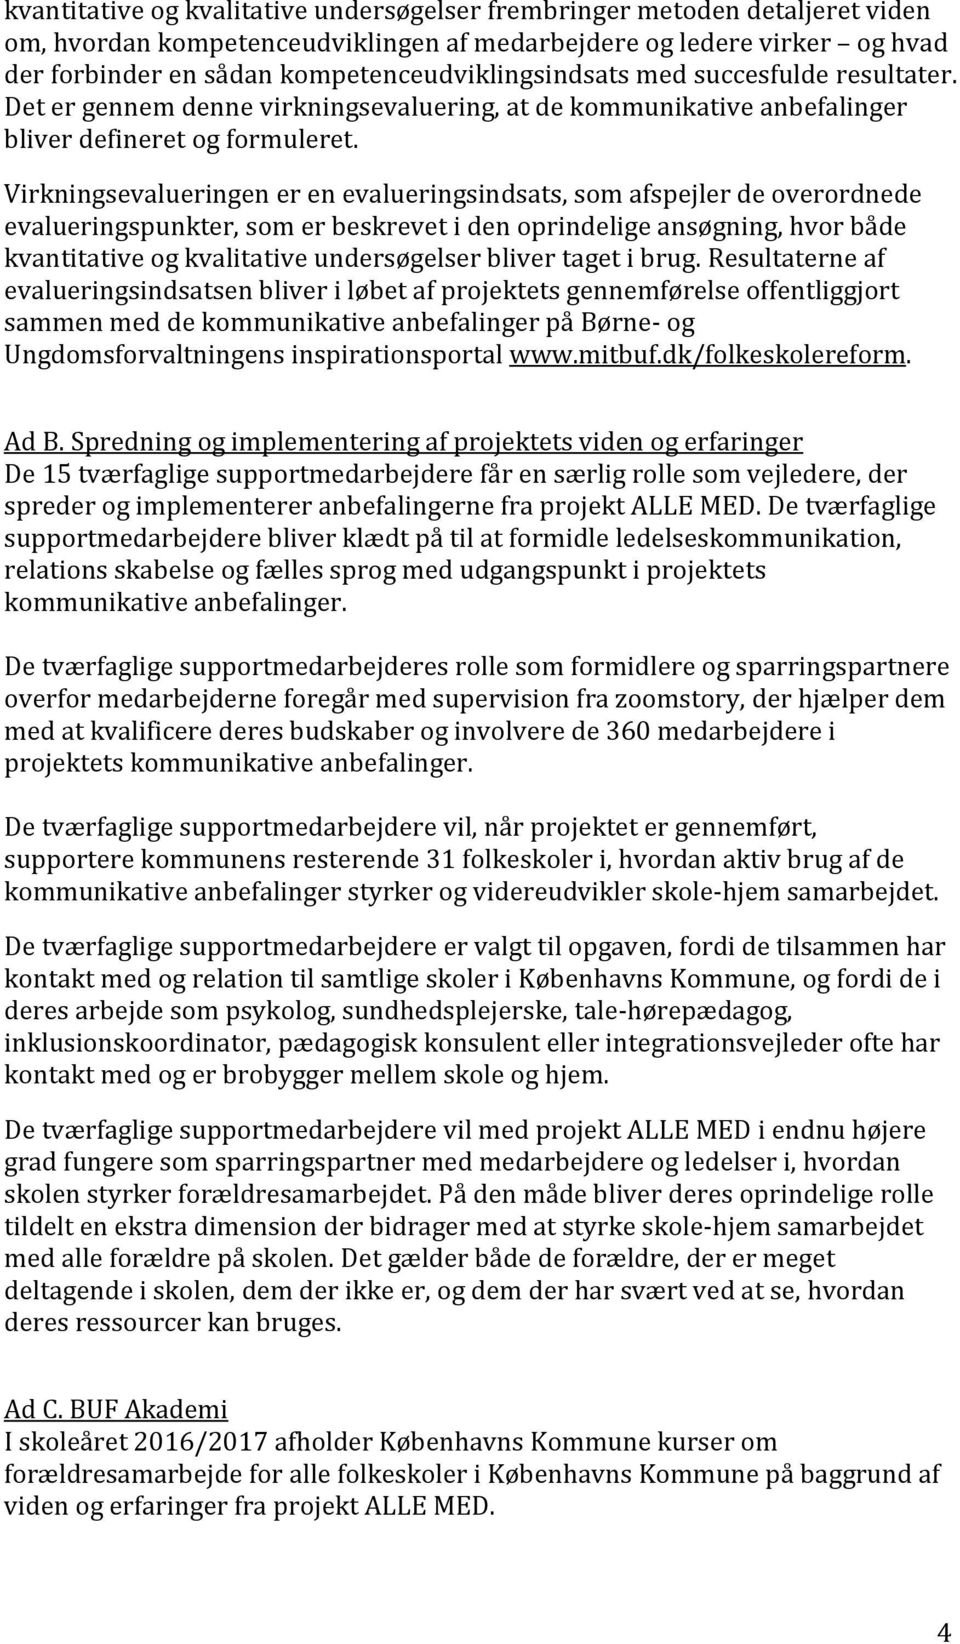 ALLE MED. skole og hjem et partnerskab. d. 10. marts Uddybning af ansøgning  til A. P. Møller Fonden - PDF Free Download